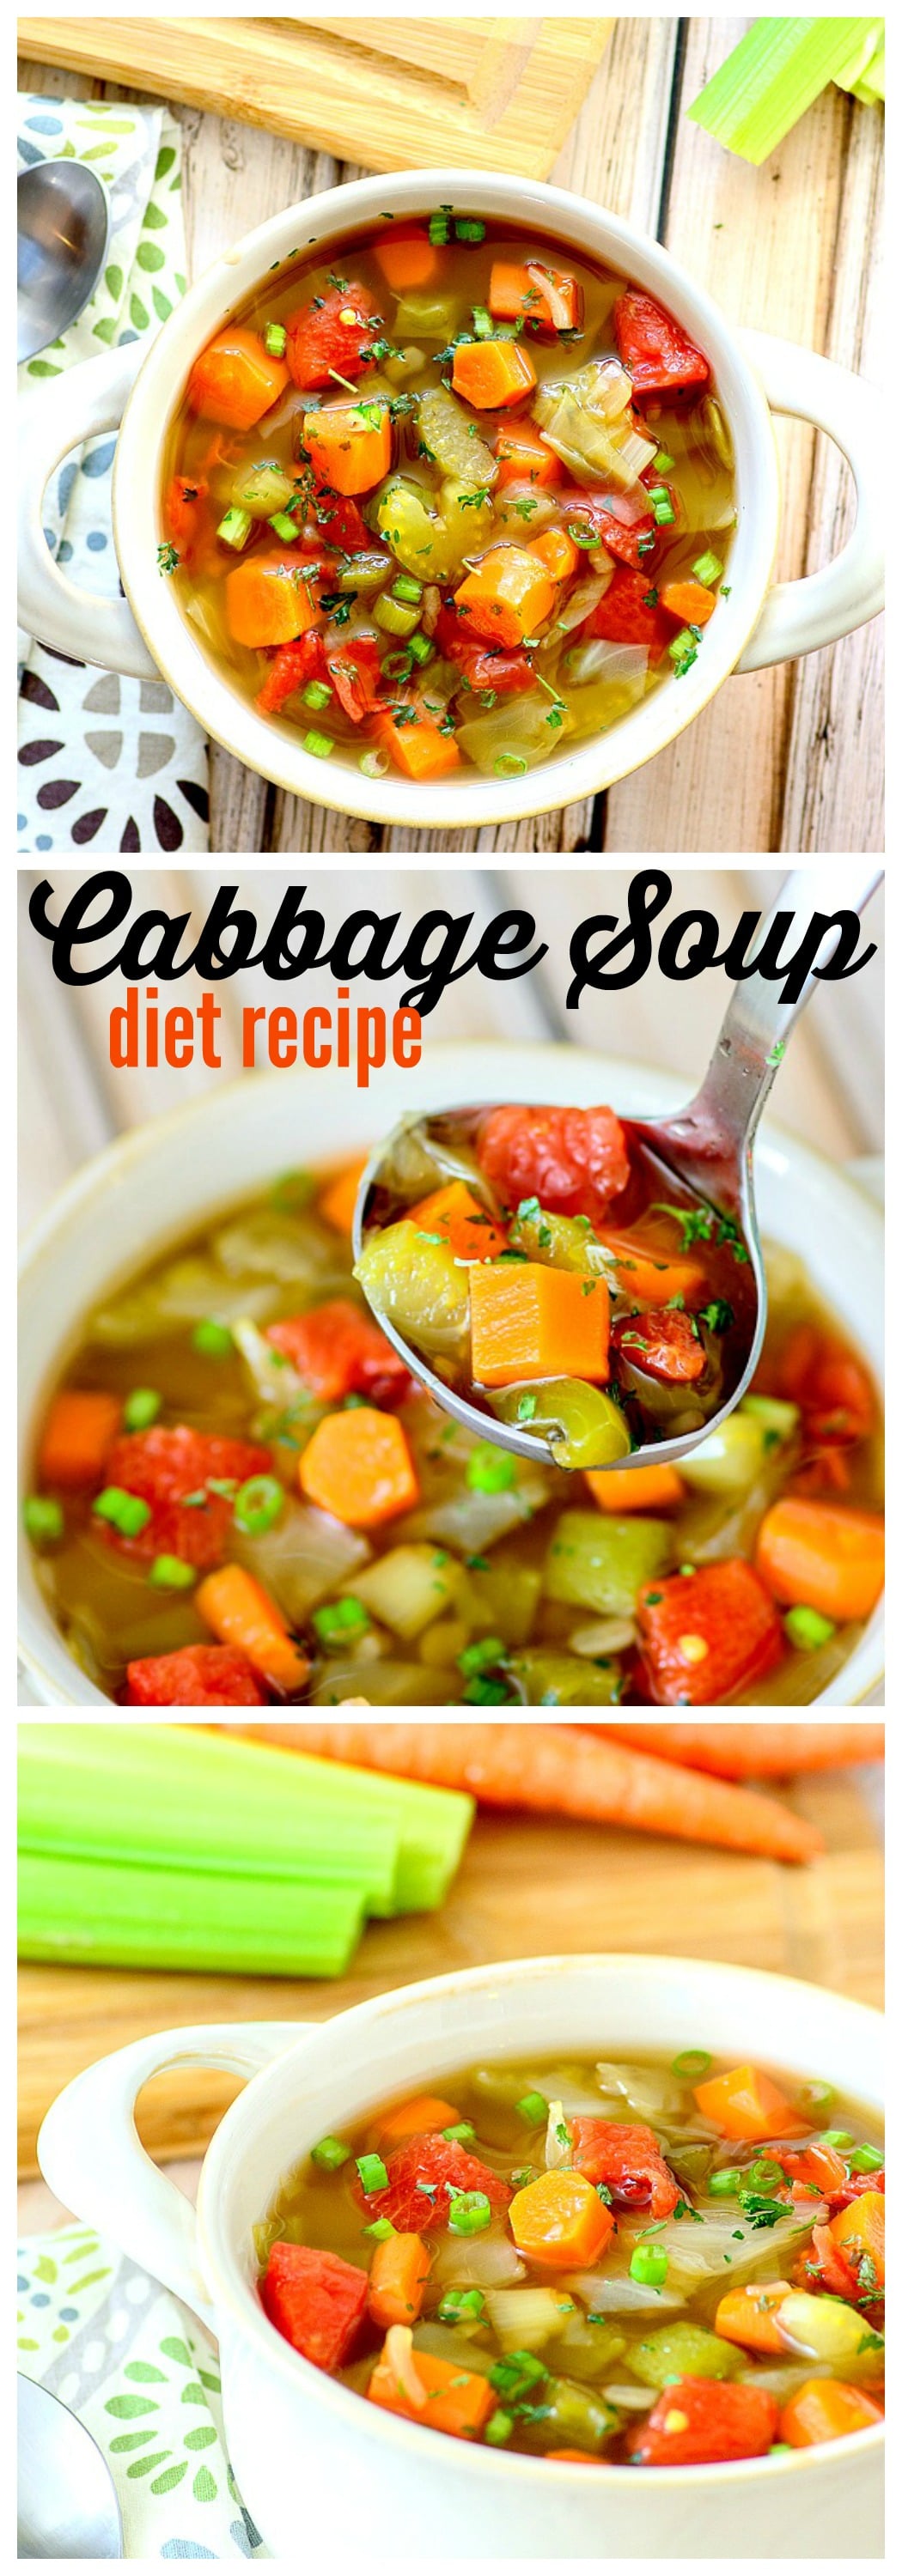 recipe soup Bikini diet and cabbage